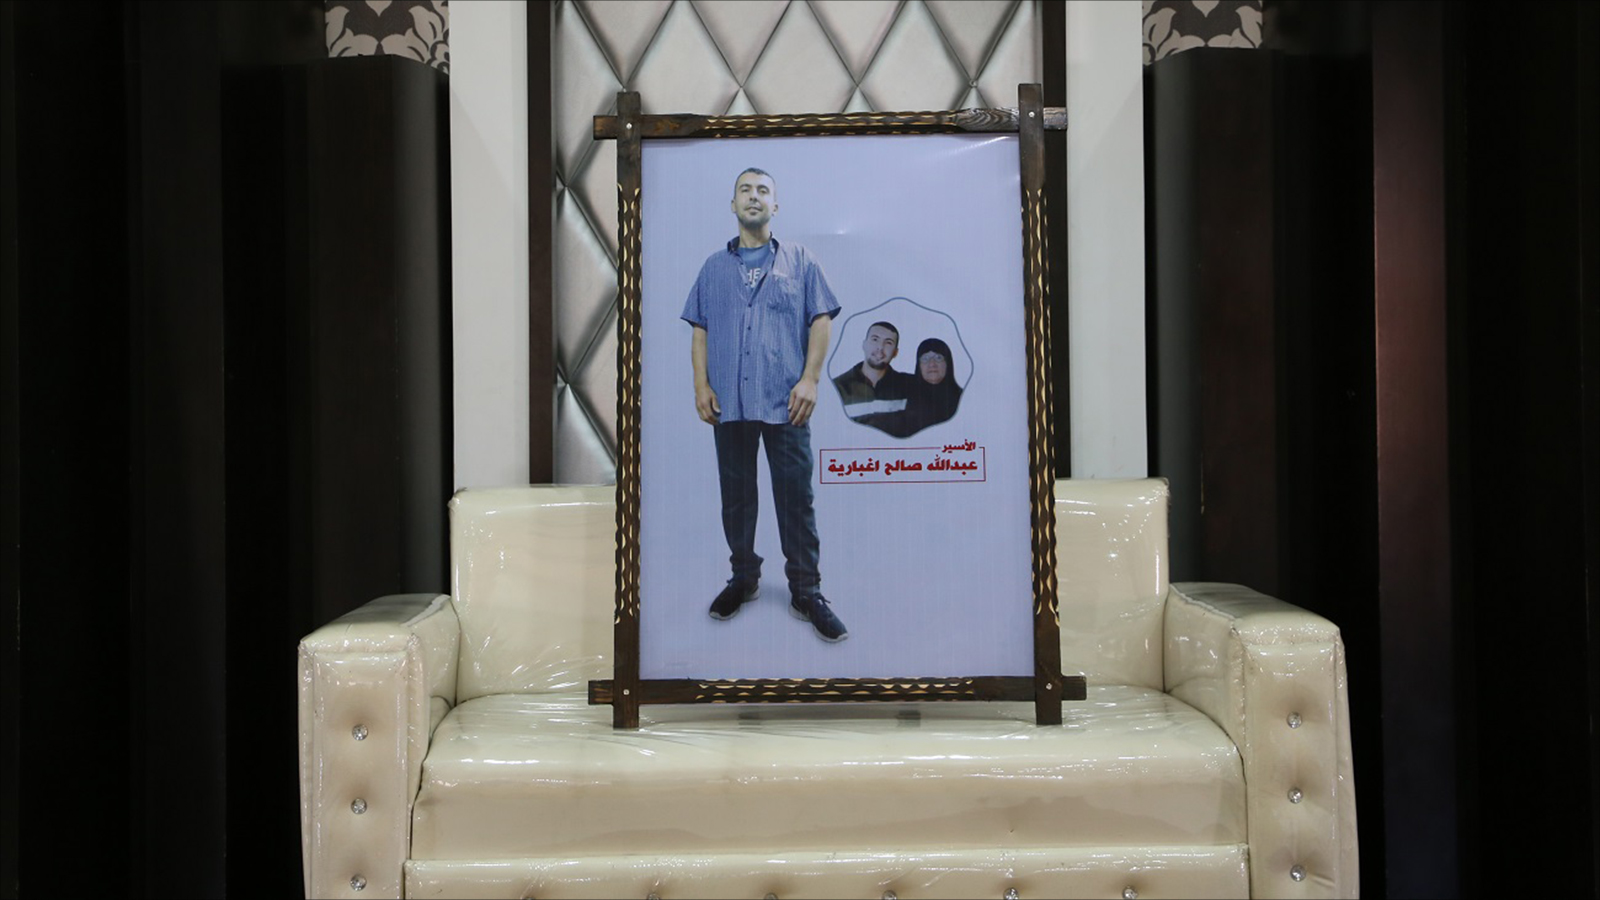 الأسير عبد الله إغبارية من أم الفحم بالداخل الفلسطيني حاضر في العرس بصورته (الجزيرة)